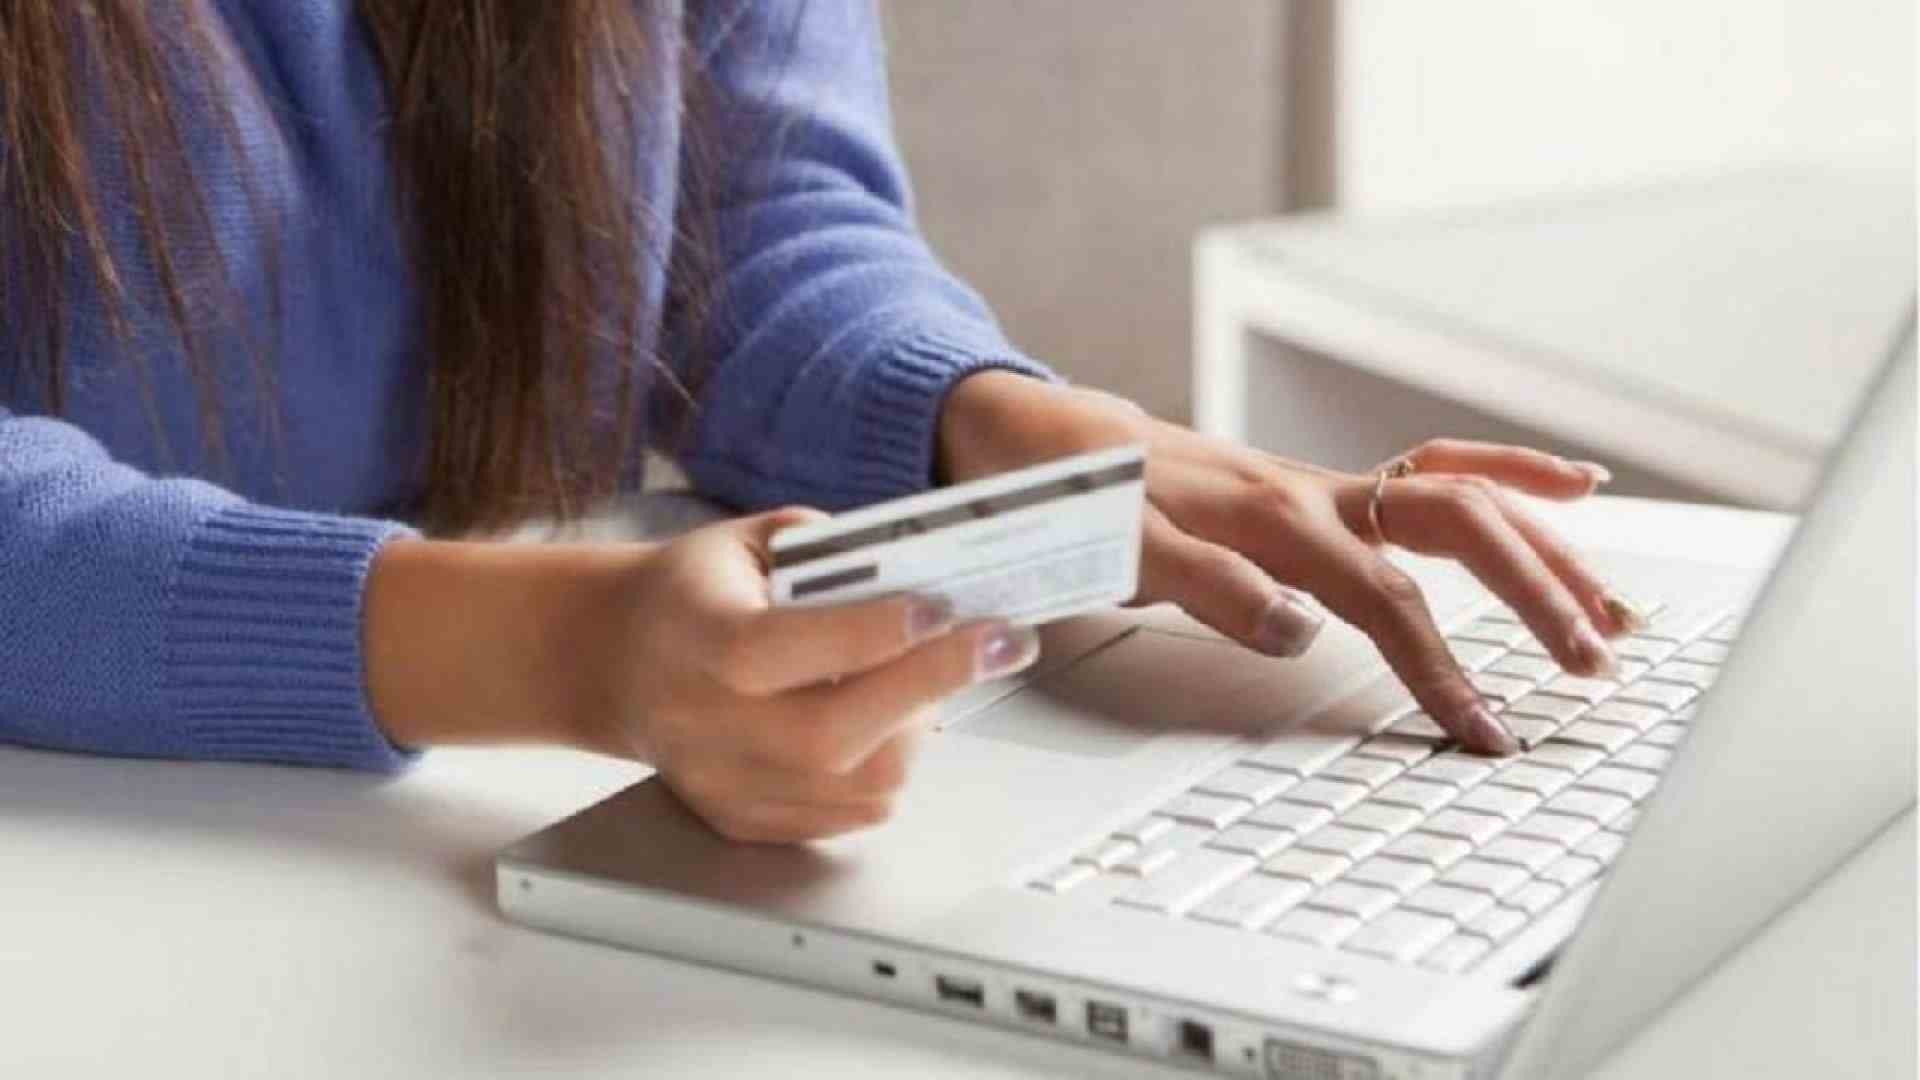 Regra de compras on-line com isenção até US$ 50 entra em vigor